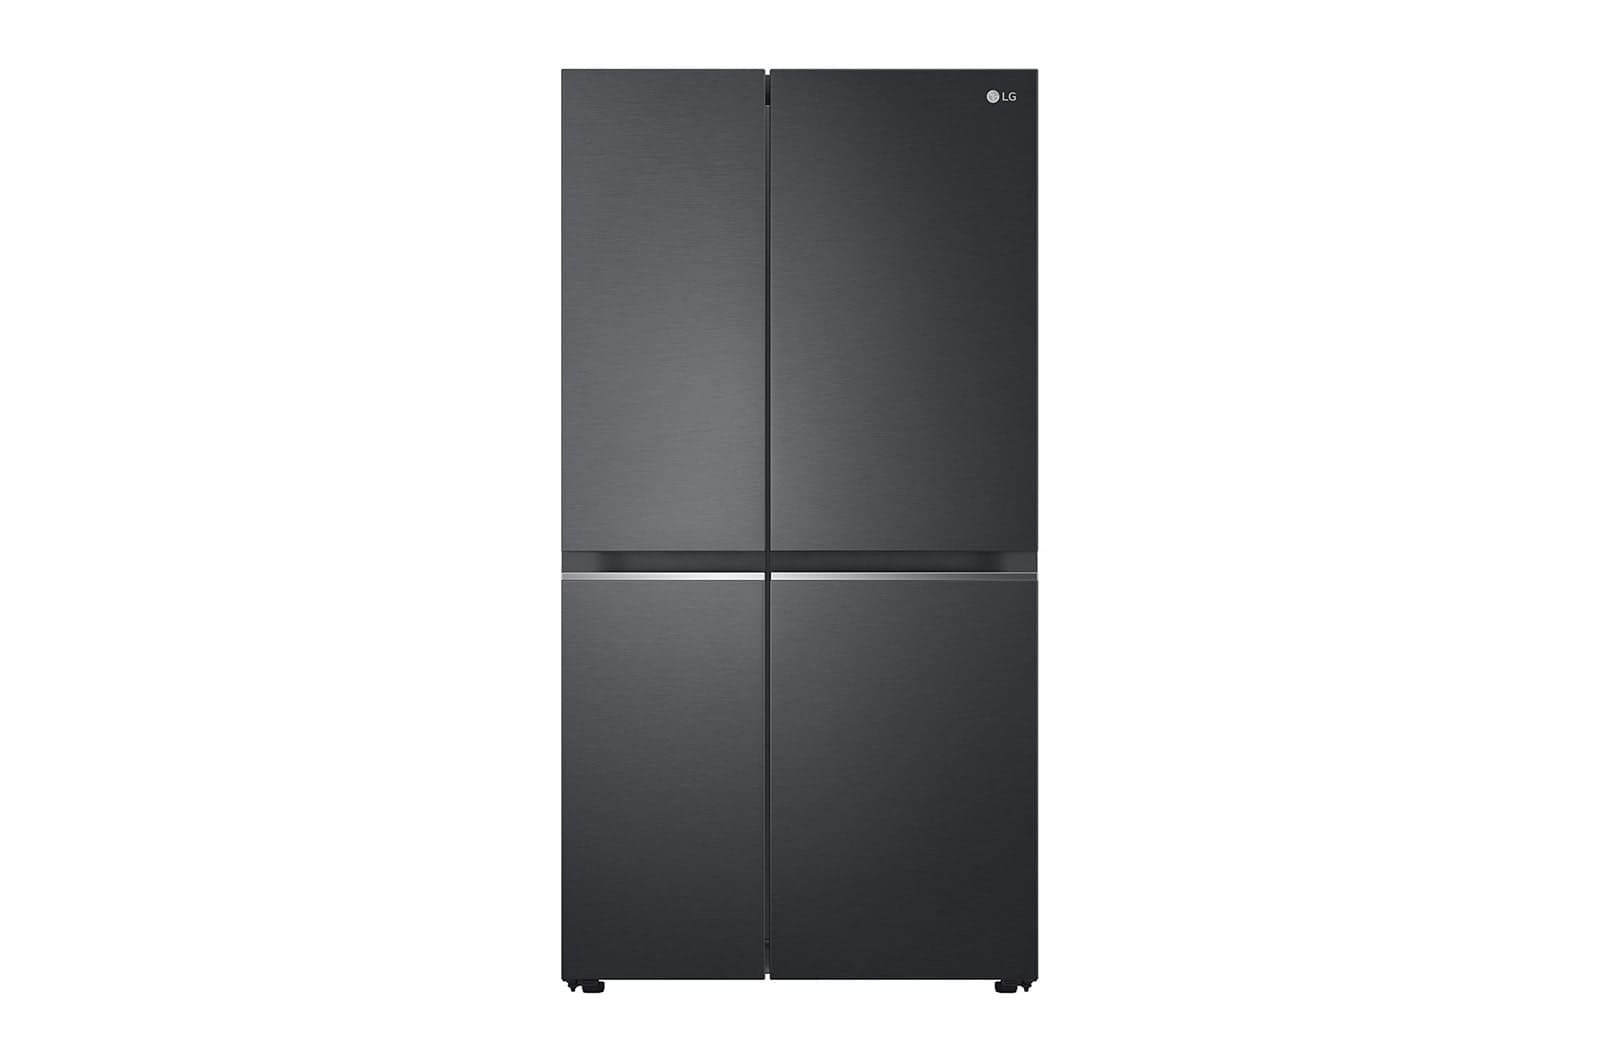 LG-694L-Side-by-side-fridge-1.jpg